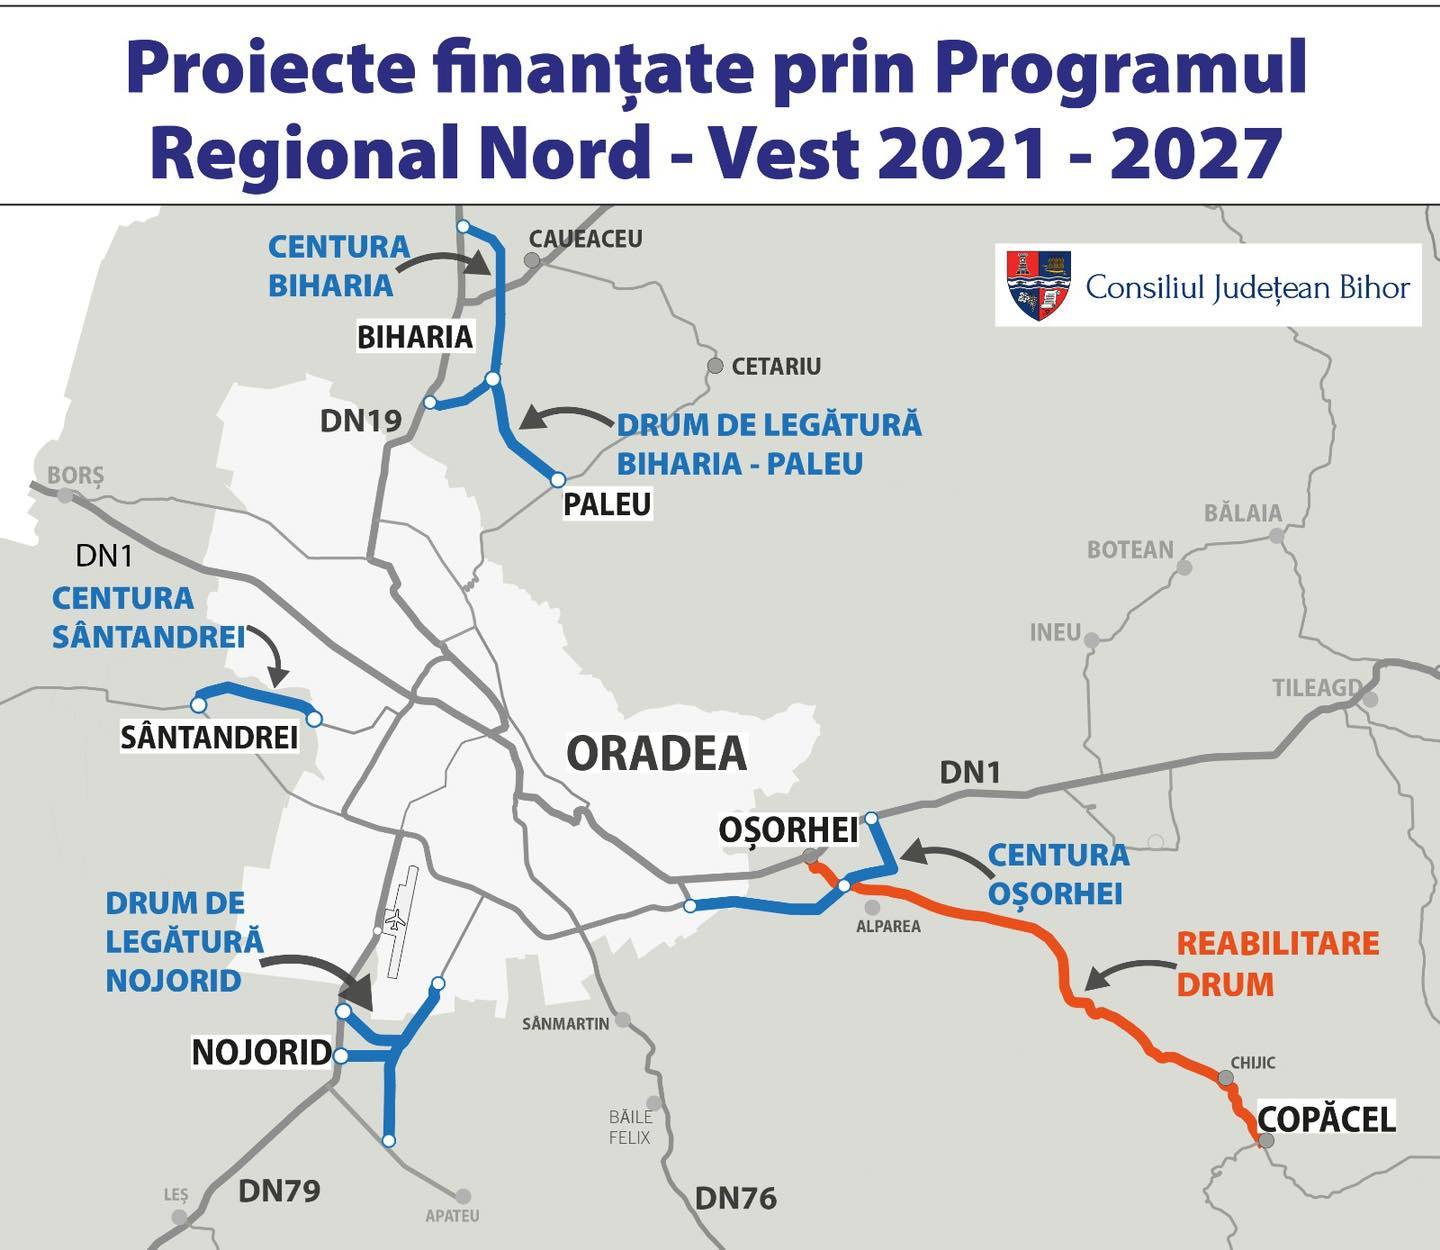 Consiliul Judeţean Bihor: S-a semnat primul contract de finanţare prin Programul Regional Nord-Vest 2021 – 2027 / Vizează construirea şi reabilitarea unor drumuri judeţene